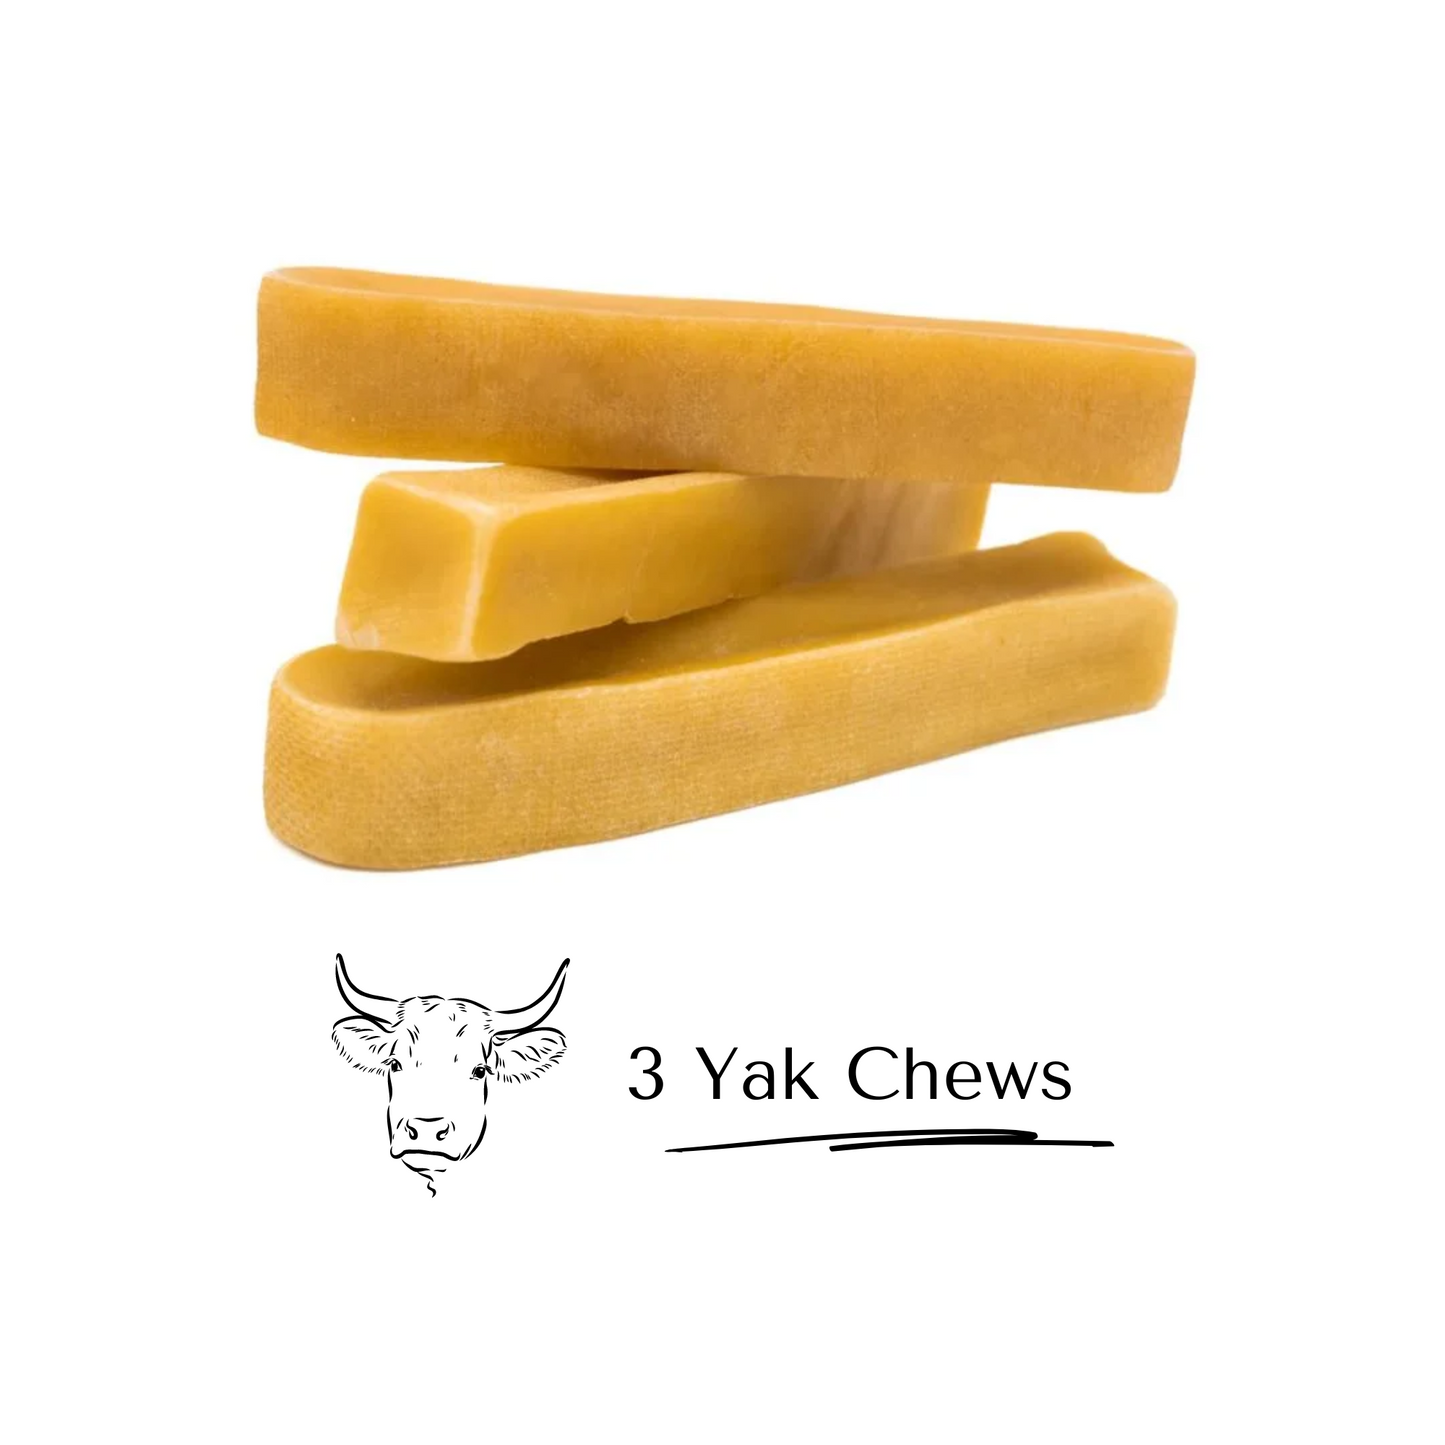 3 Pack of Yak Chews